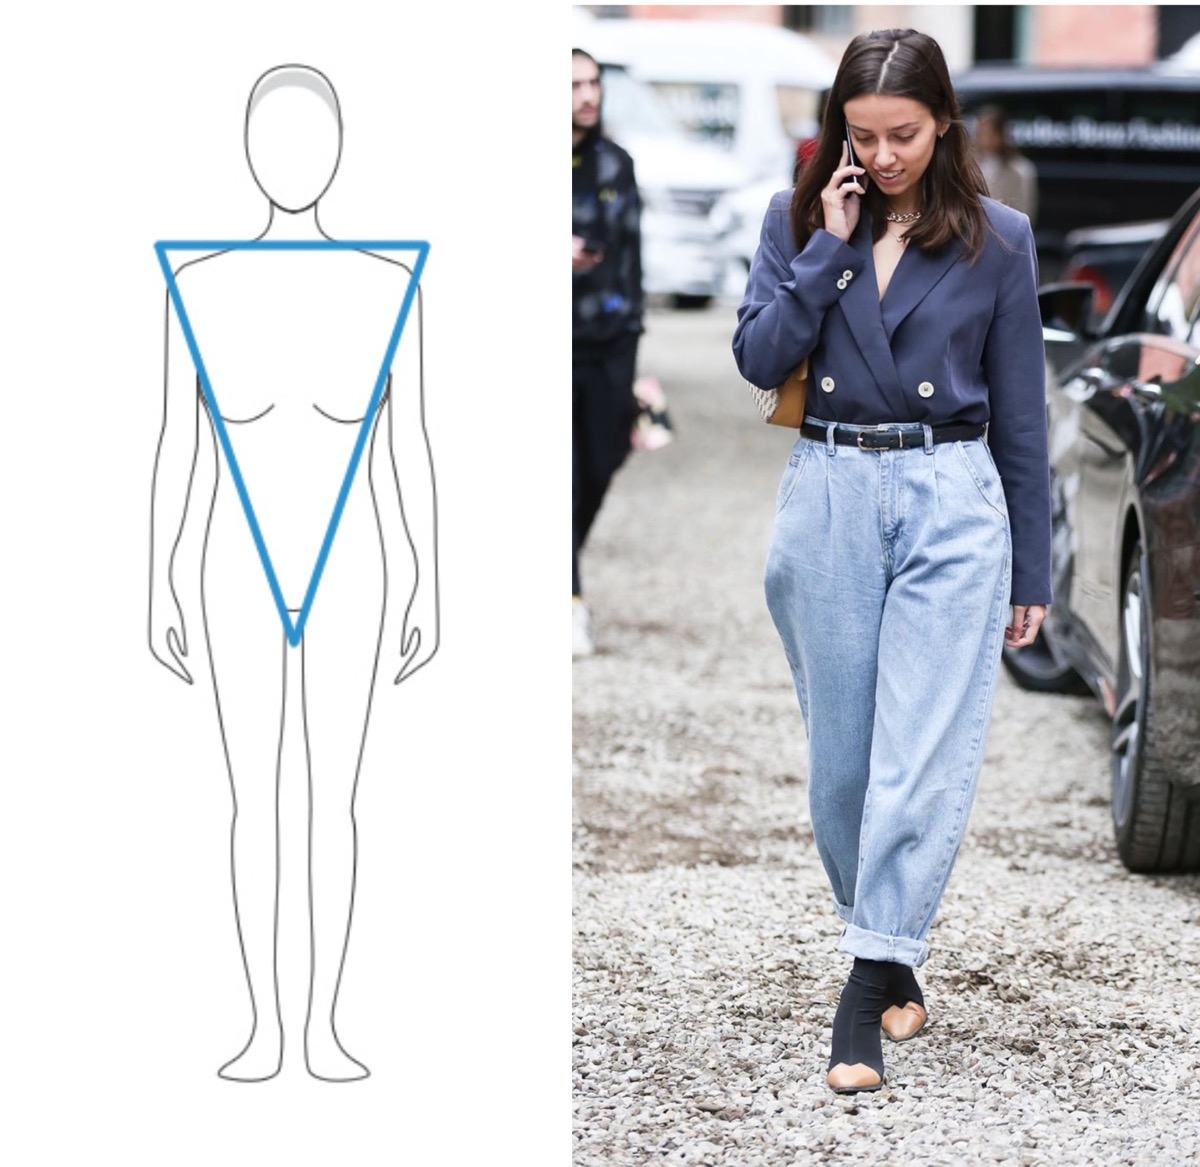 Fashion-инструкция: как выбрать идеальные джинсы - фото №3